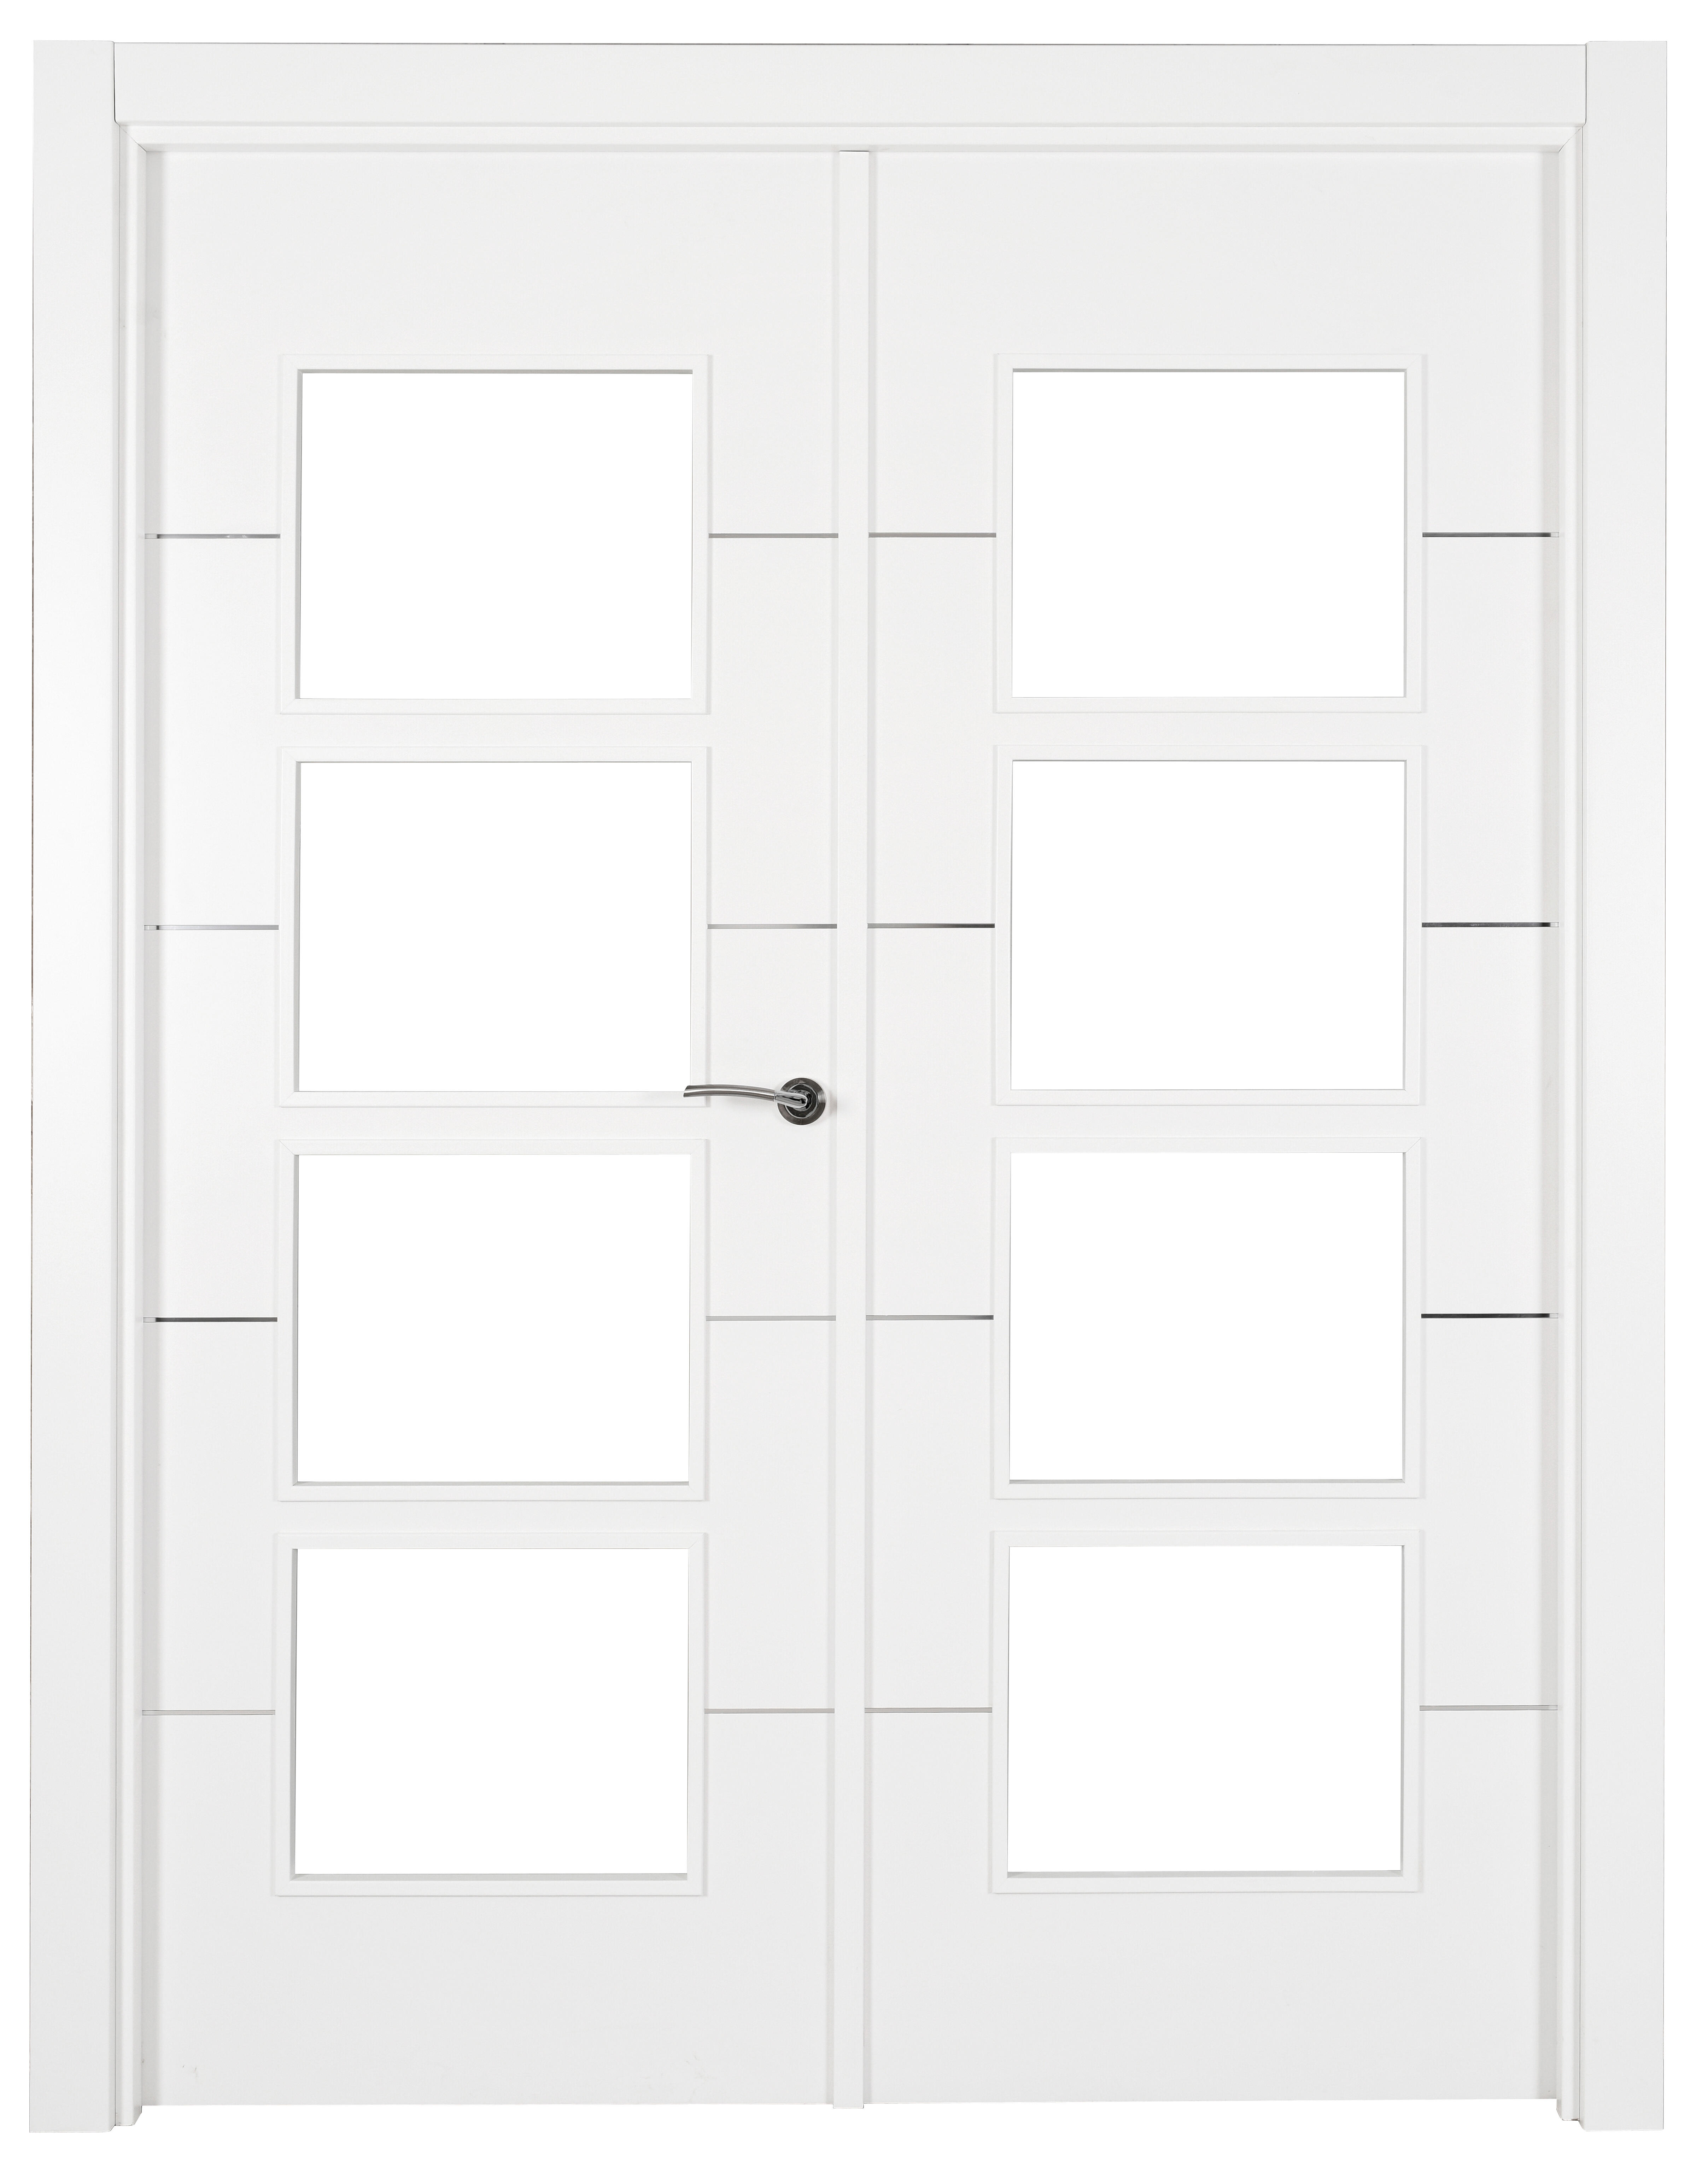 Puerta abatible paris blanca premium apertura izquierda de 9x125 cm